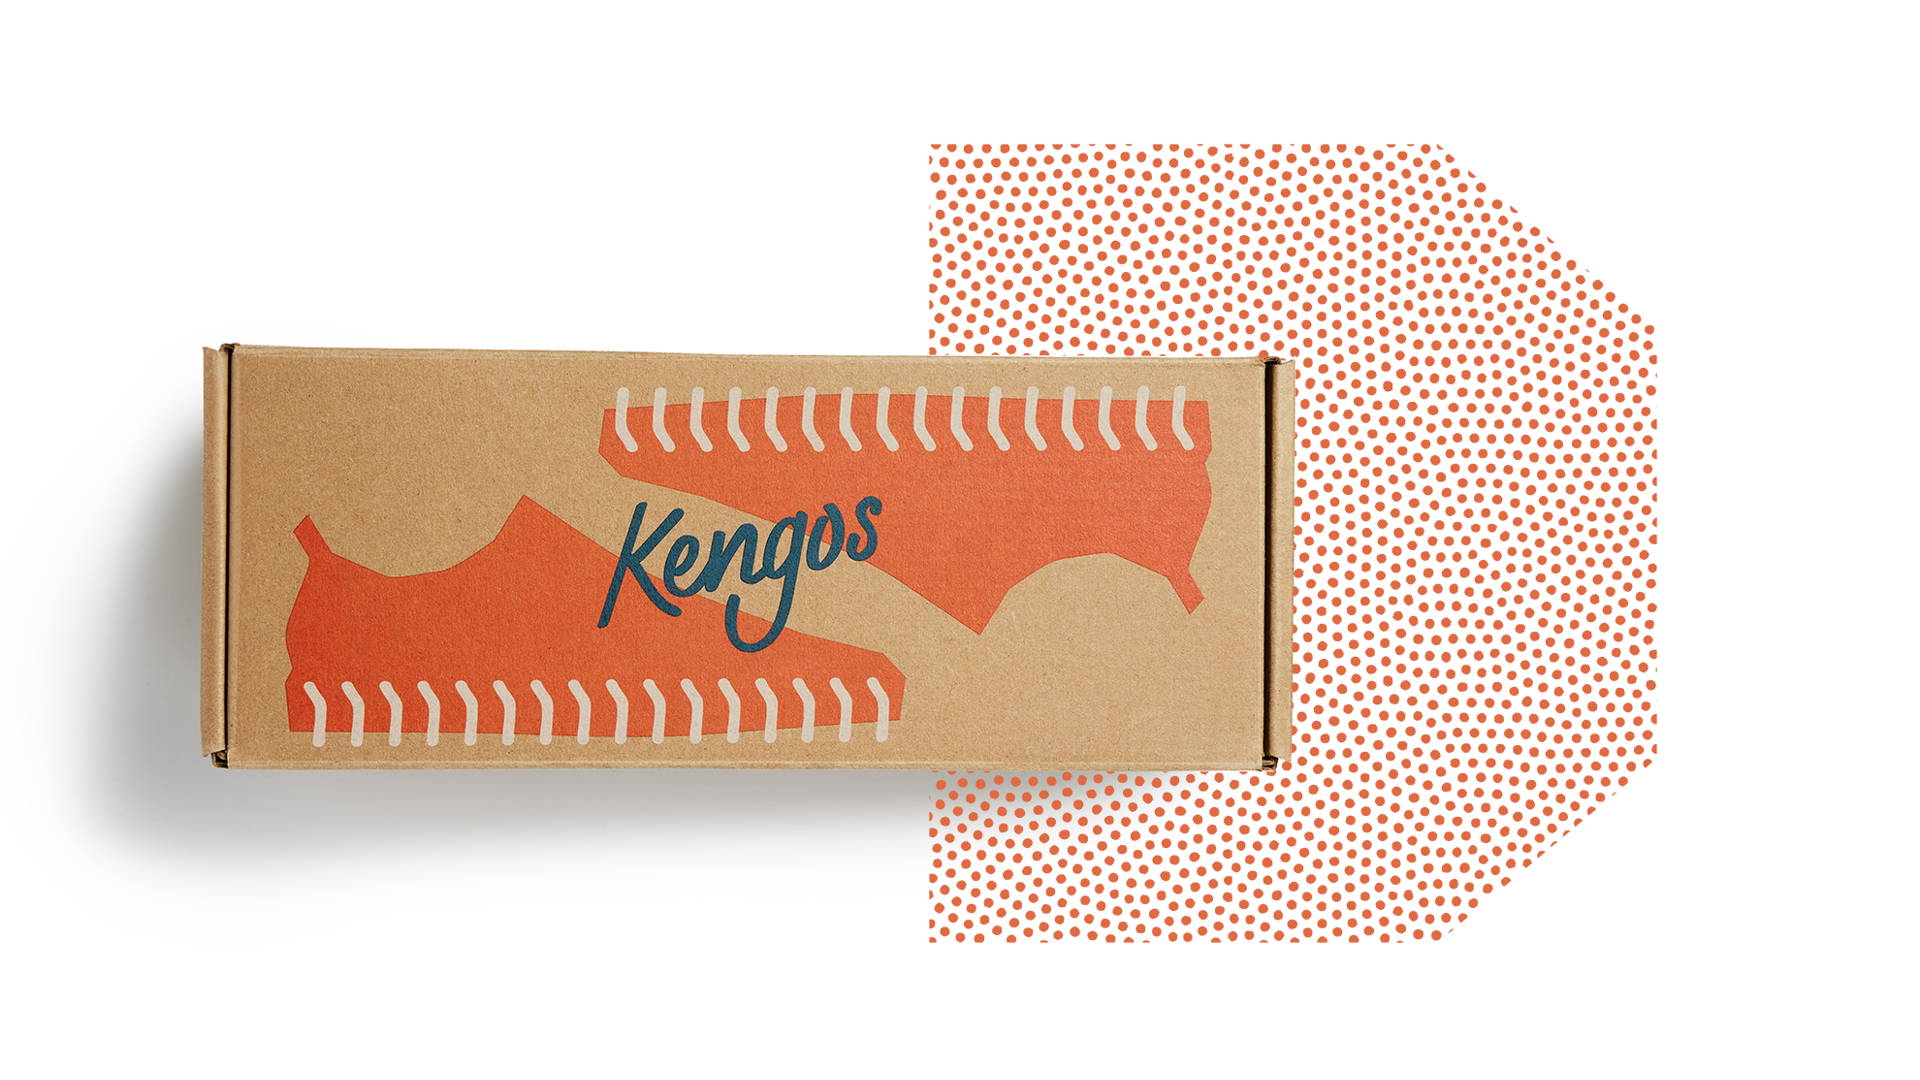 Kengos shoe packaging